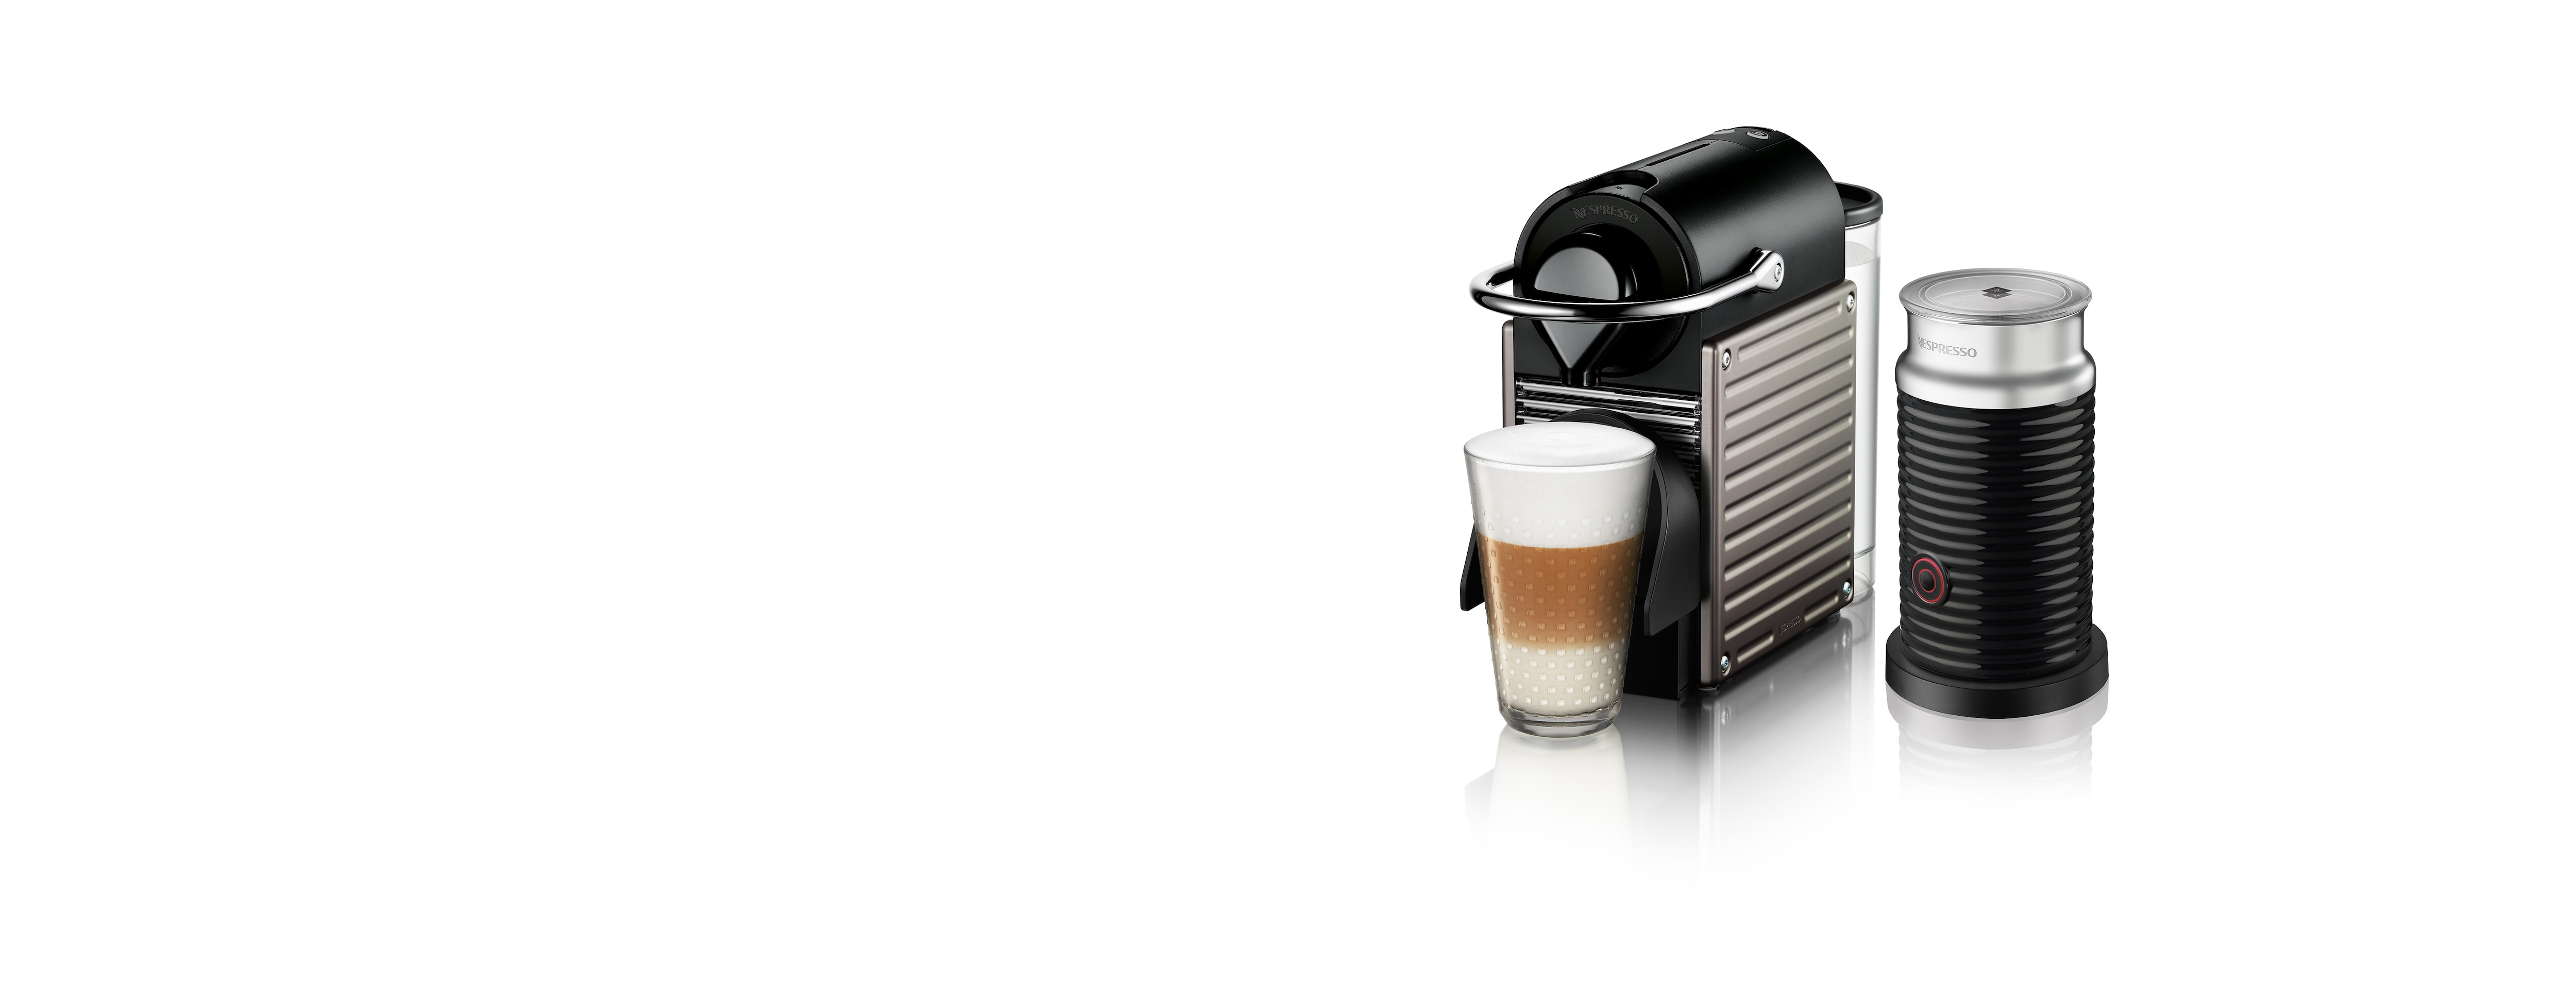 Pixie Titanium, Coffee and espresso Machine